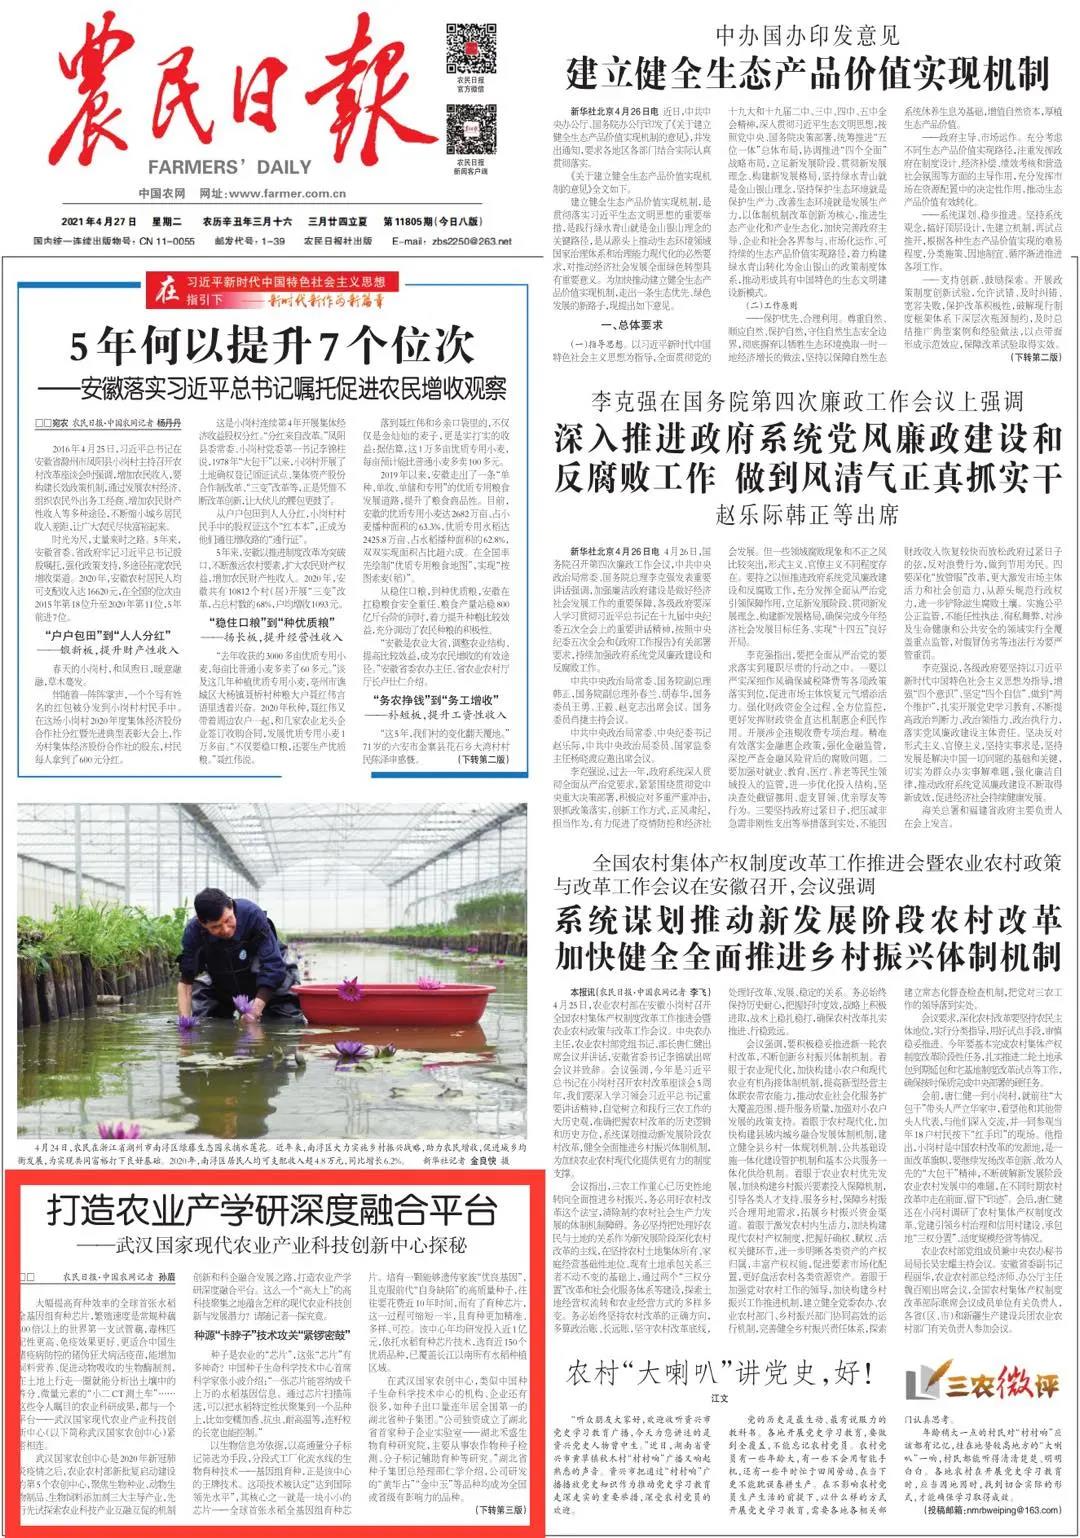 农民日报头版报道武汉国家农创中心打造农业产学研深度融合平台，合缘公司产品被重点推荐